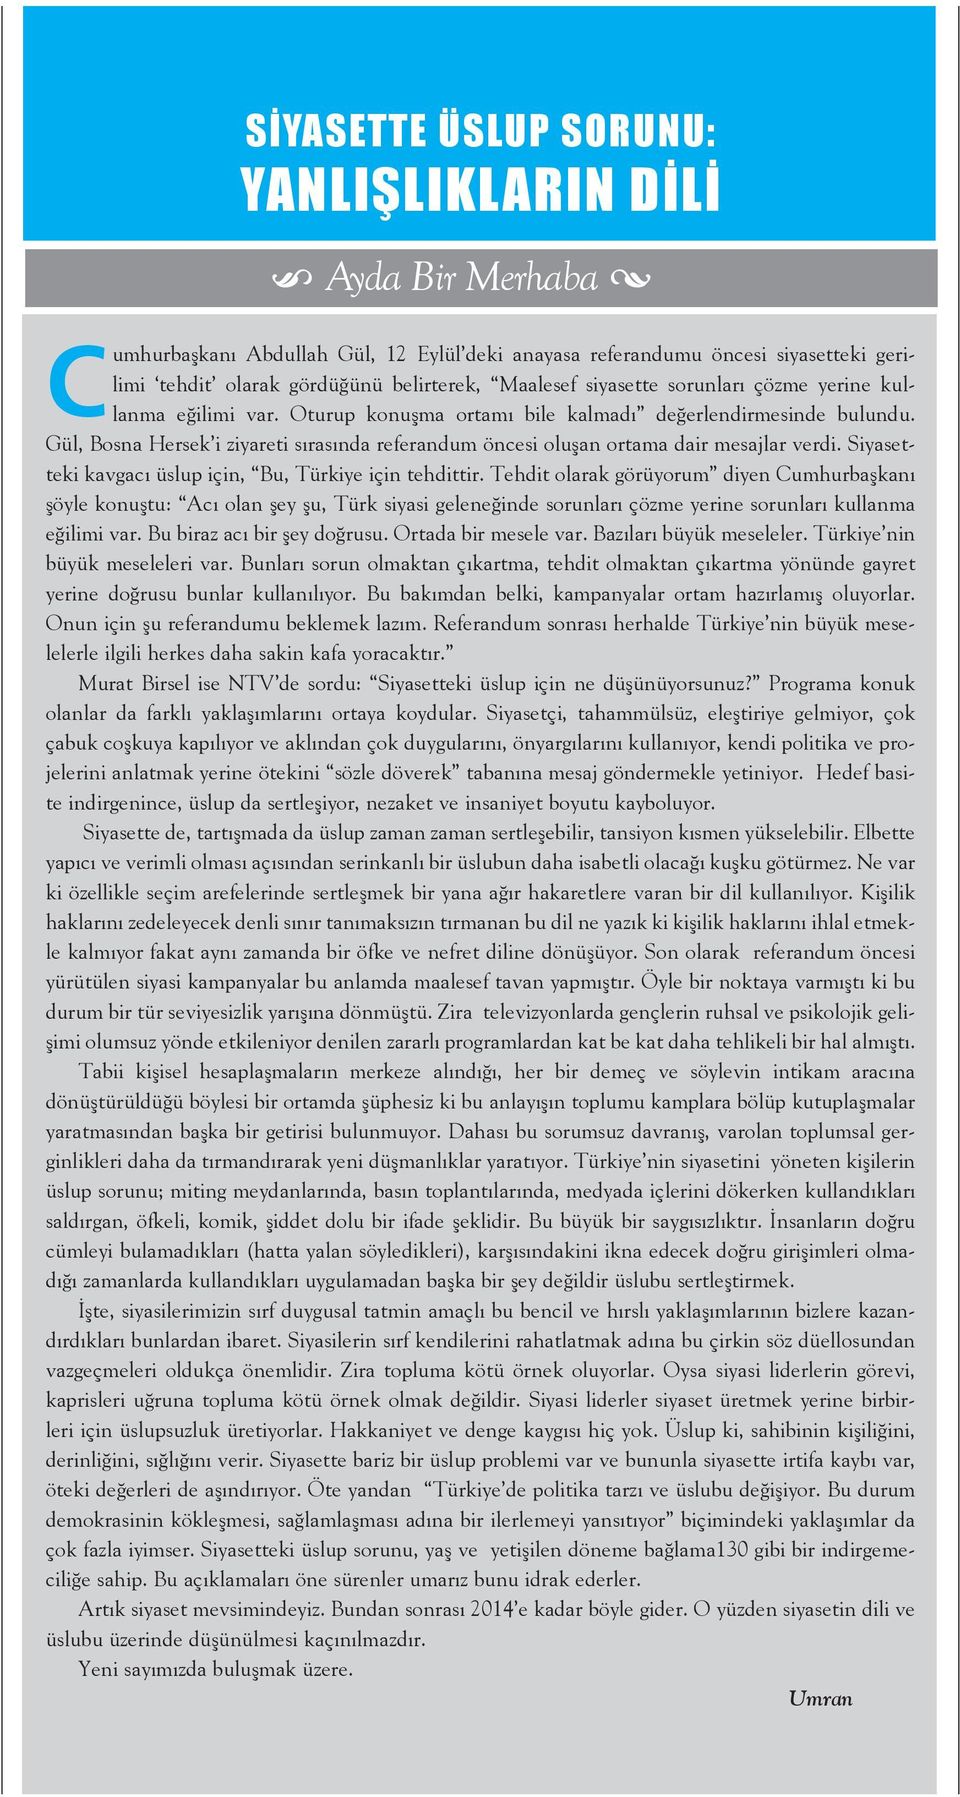 Gül, Bosna Hersek i ziyareti sırasında referandum öncesi oluşan ortama dair mesajlar verdi. Siyasetteki kavgacı üslup için, Bu, Türkiye için tehdittir.